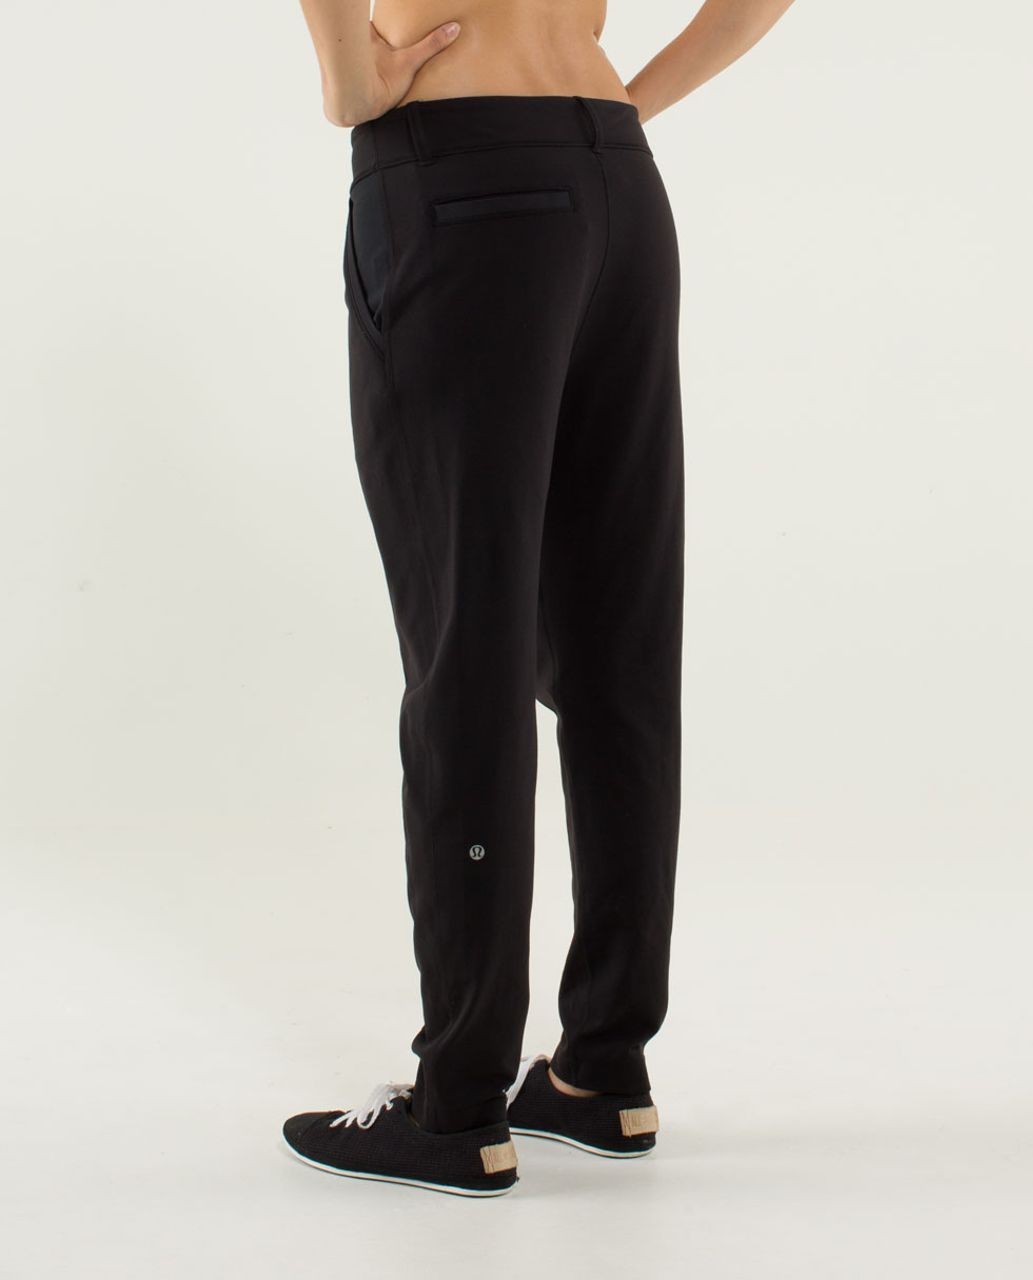 Lululemon Trouser Pant - Black / Hyper Stripe Angel Wing